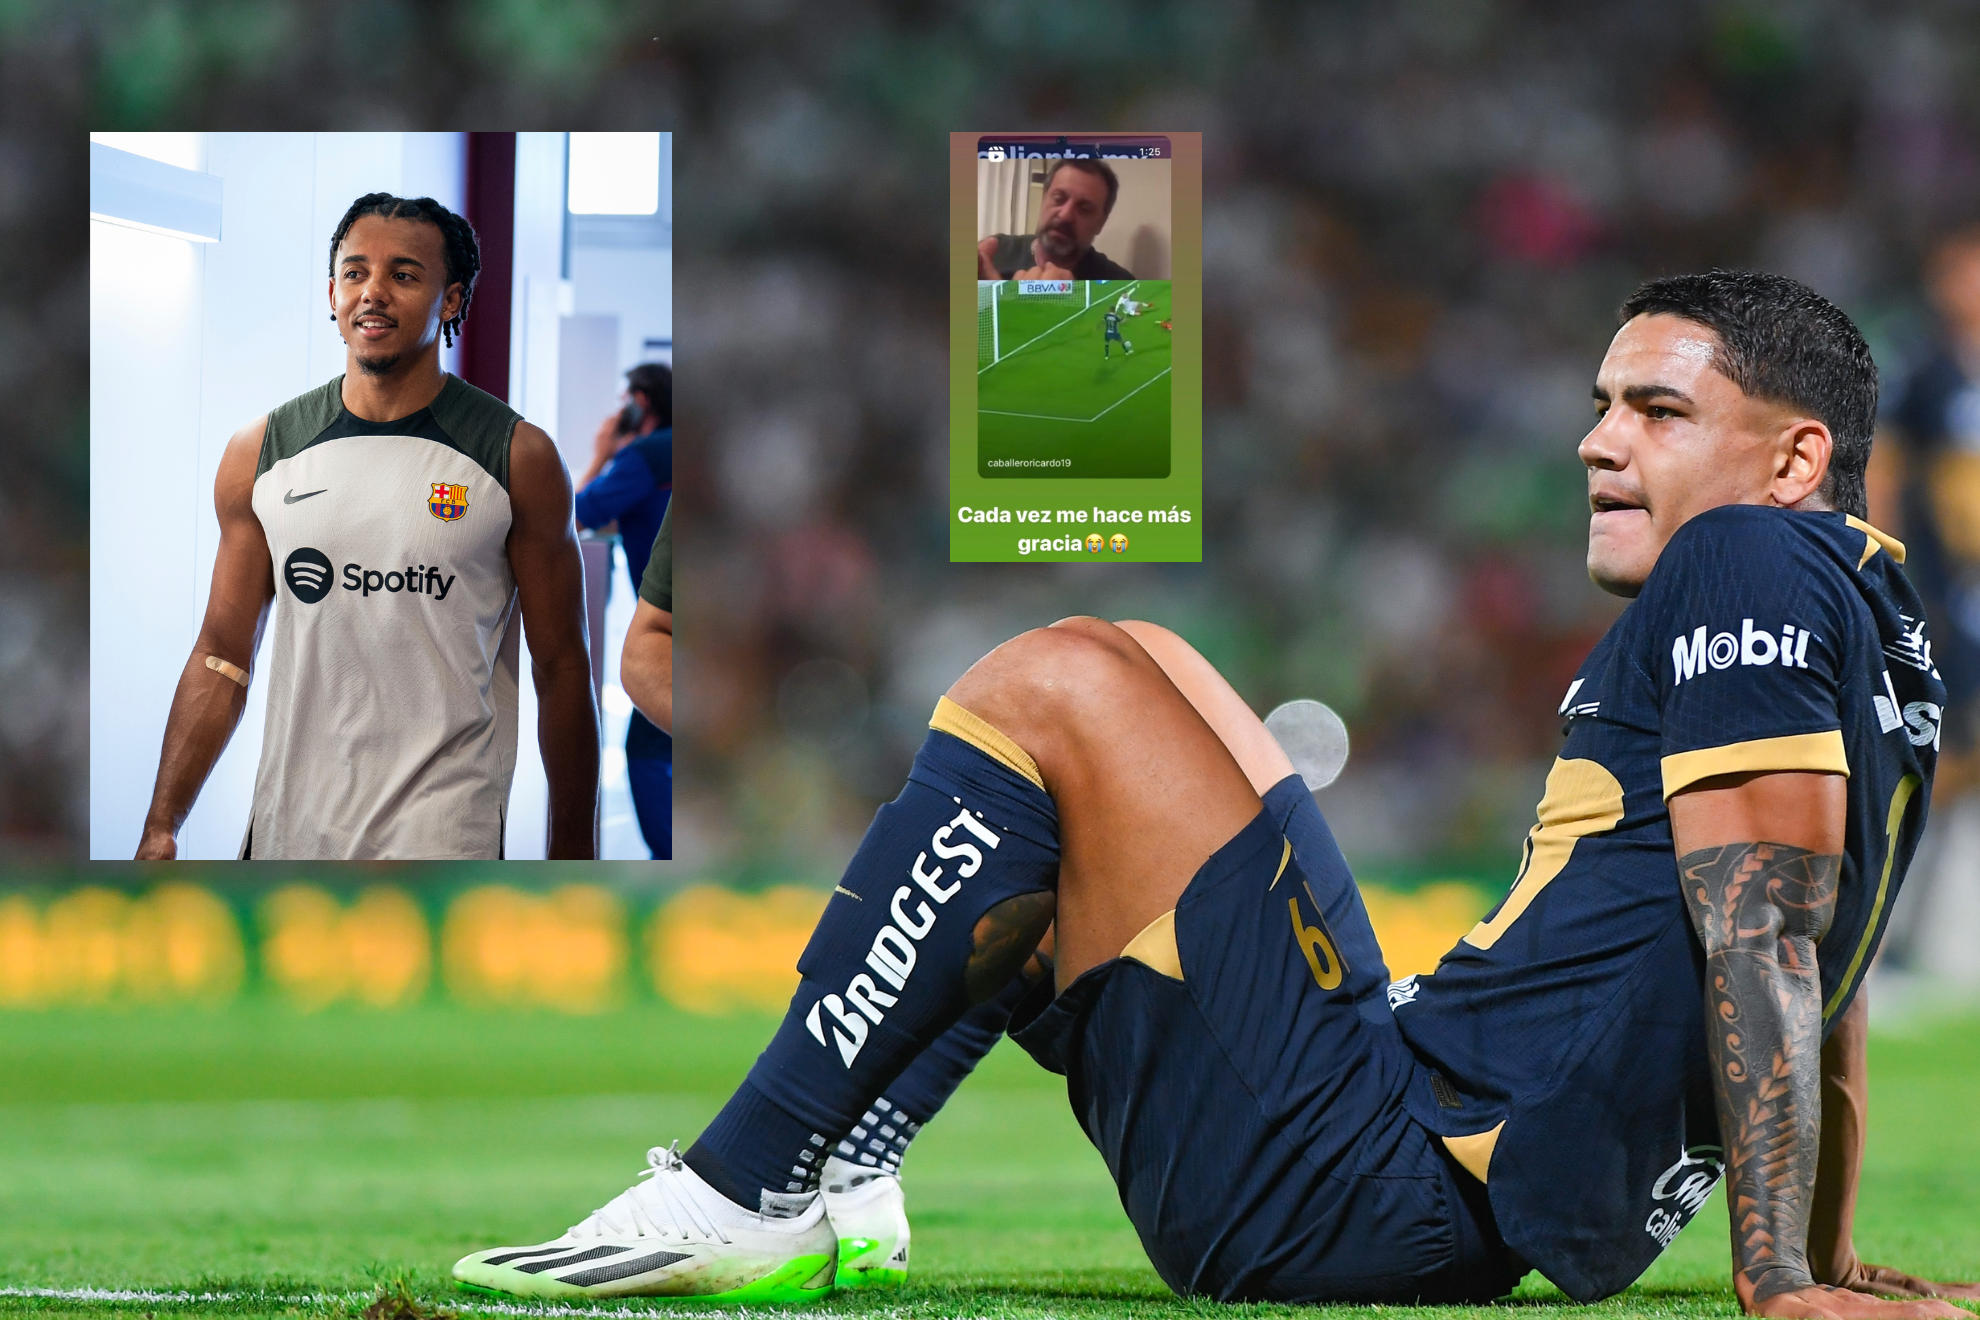 Montaje con Koundé, Fernández y la historia de Instagram con el gol errado.